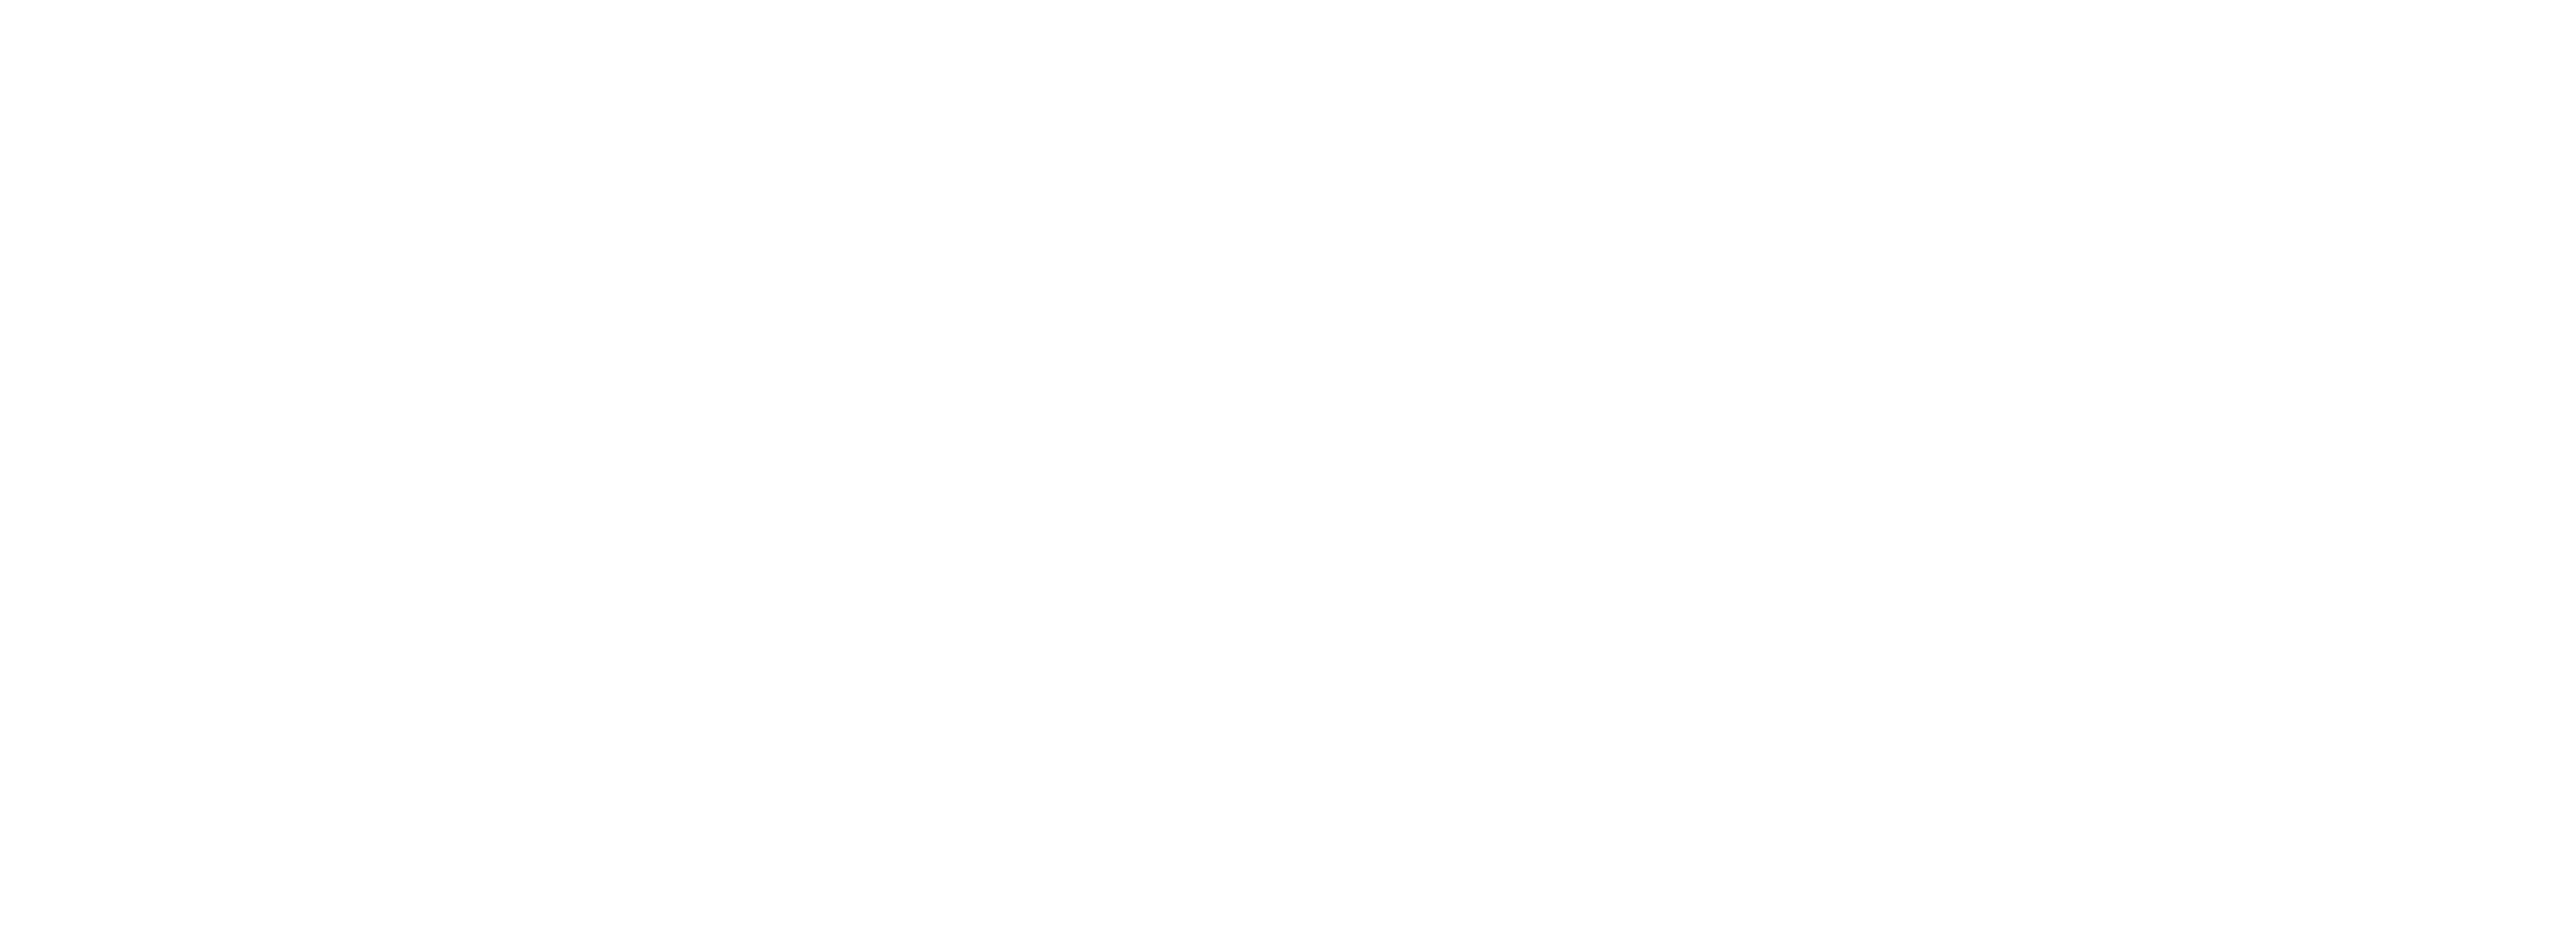 Visit Taunton logo